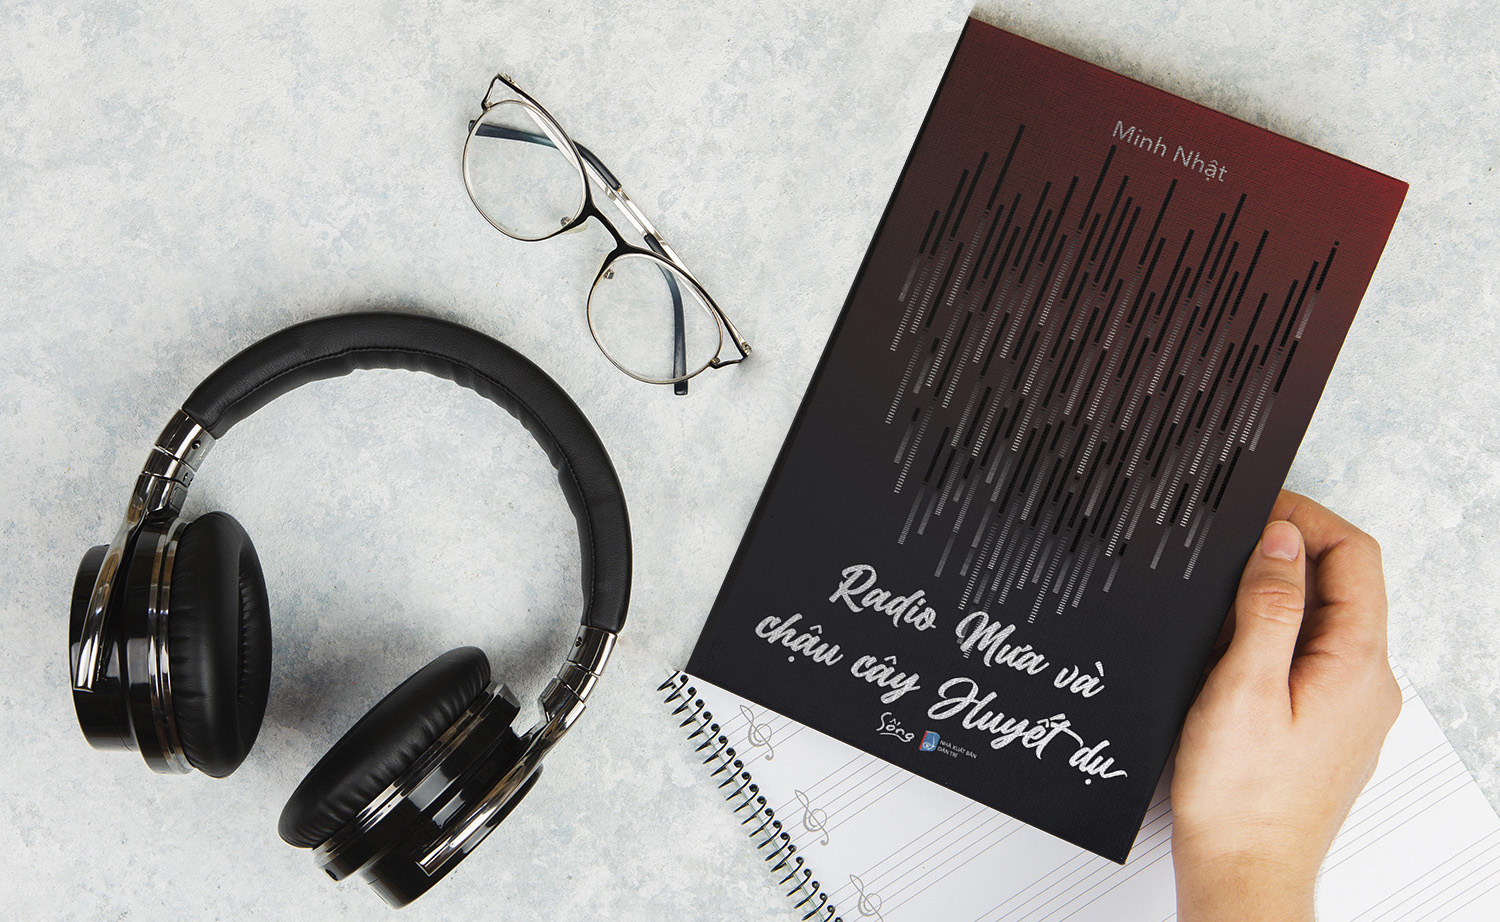 Radio Mưa và chậu cây Huyết dụ - Minh Nhật với chất liệu từ cuộc sống đưa bạn tới câu chuyện của chính bạn